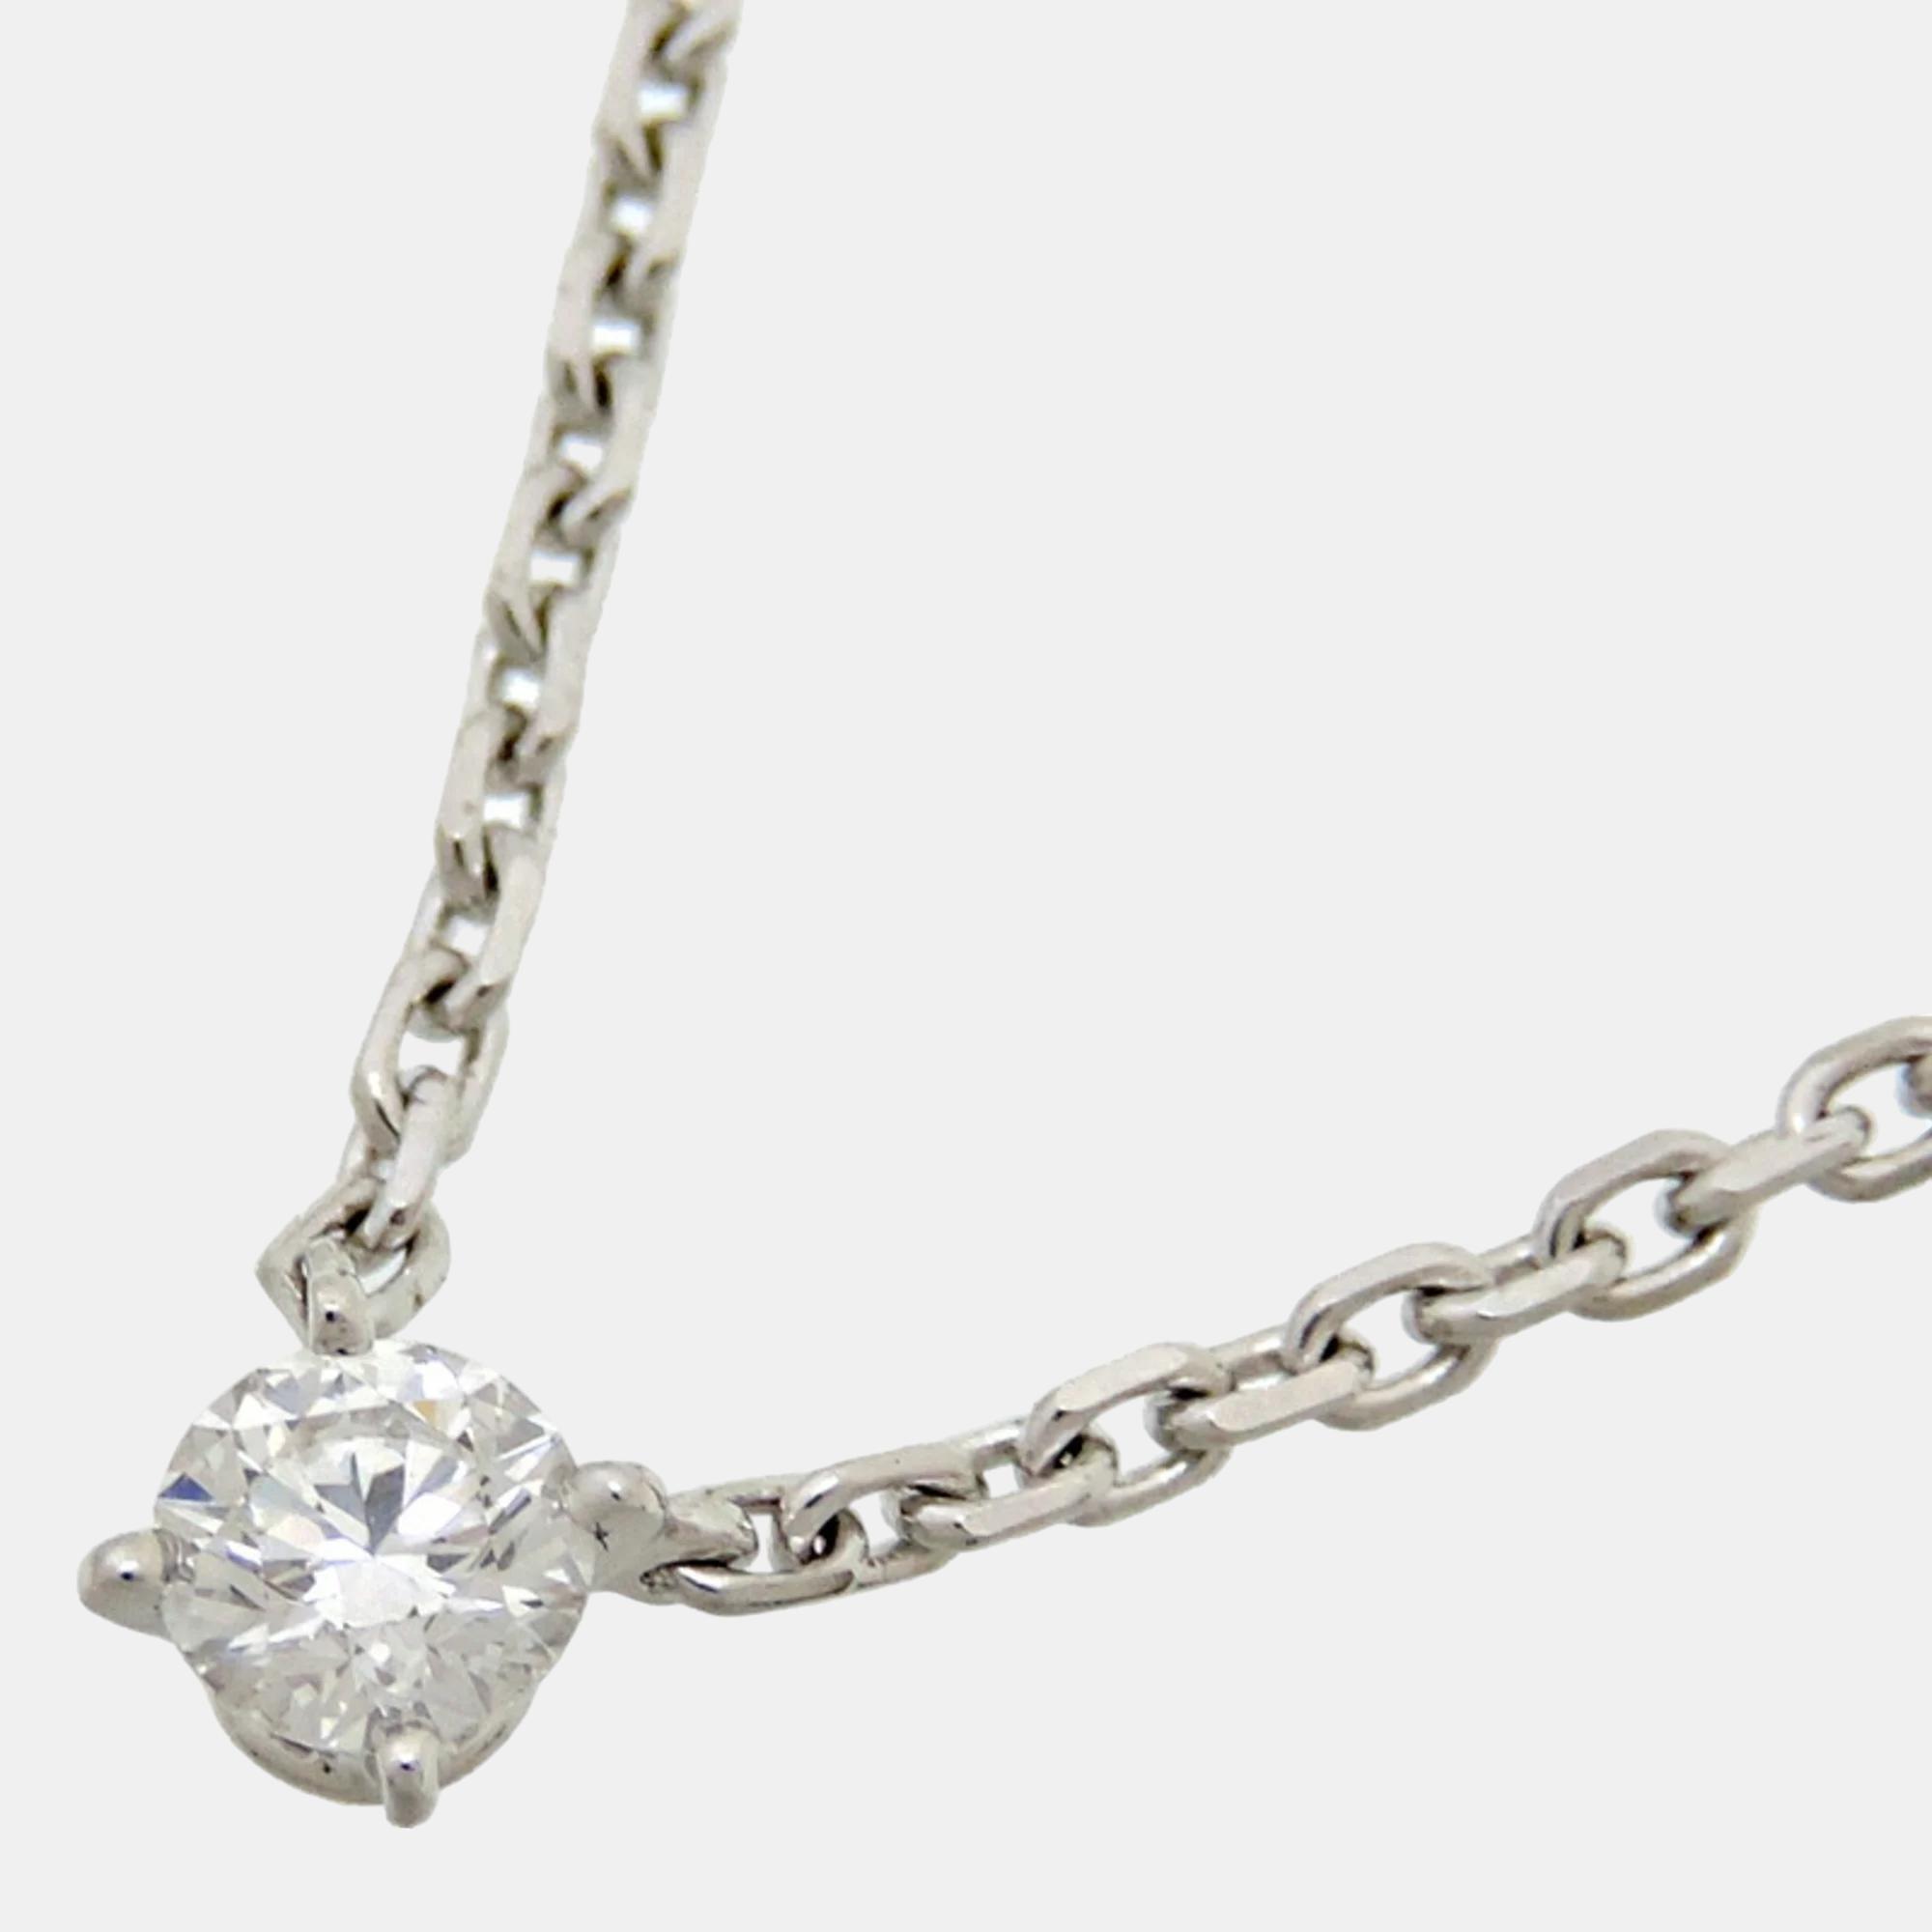 Cartier 18k white gold and diamond c de cartier pendant necklace